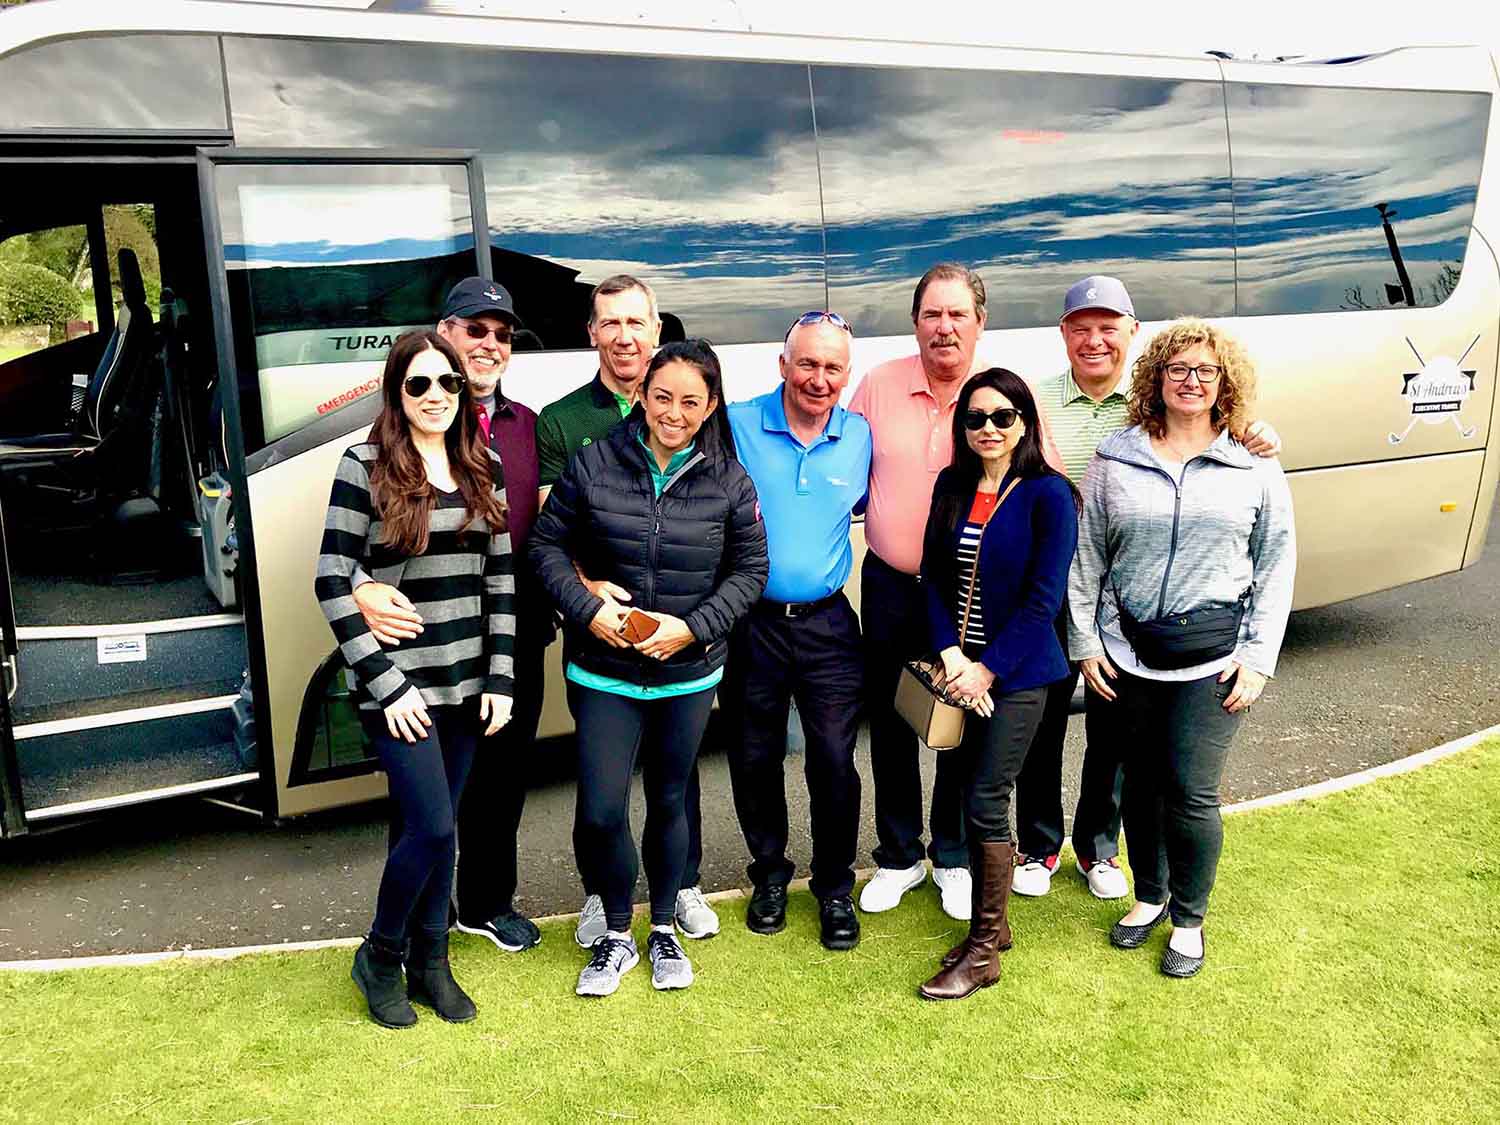 Haversham & Baker Scotland golf tour reviews